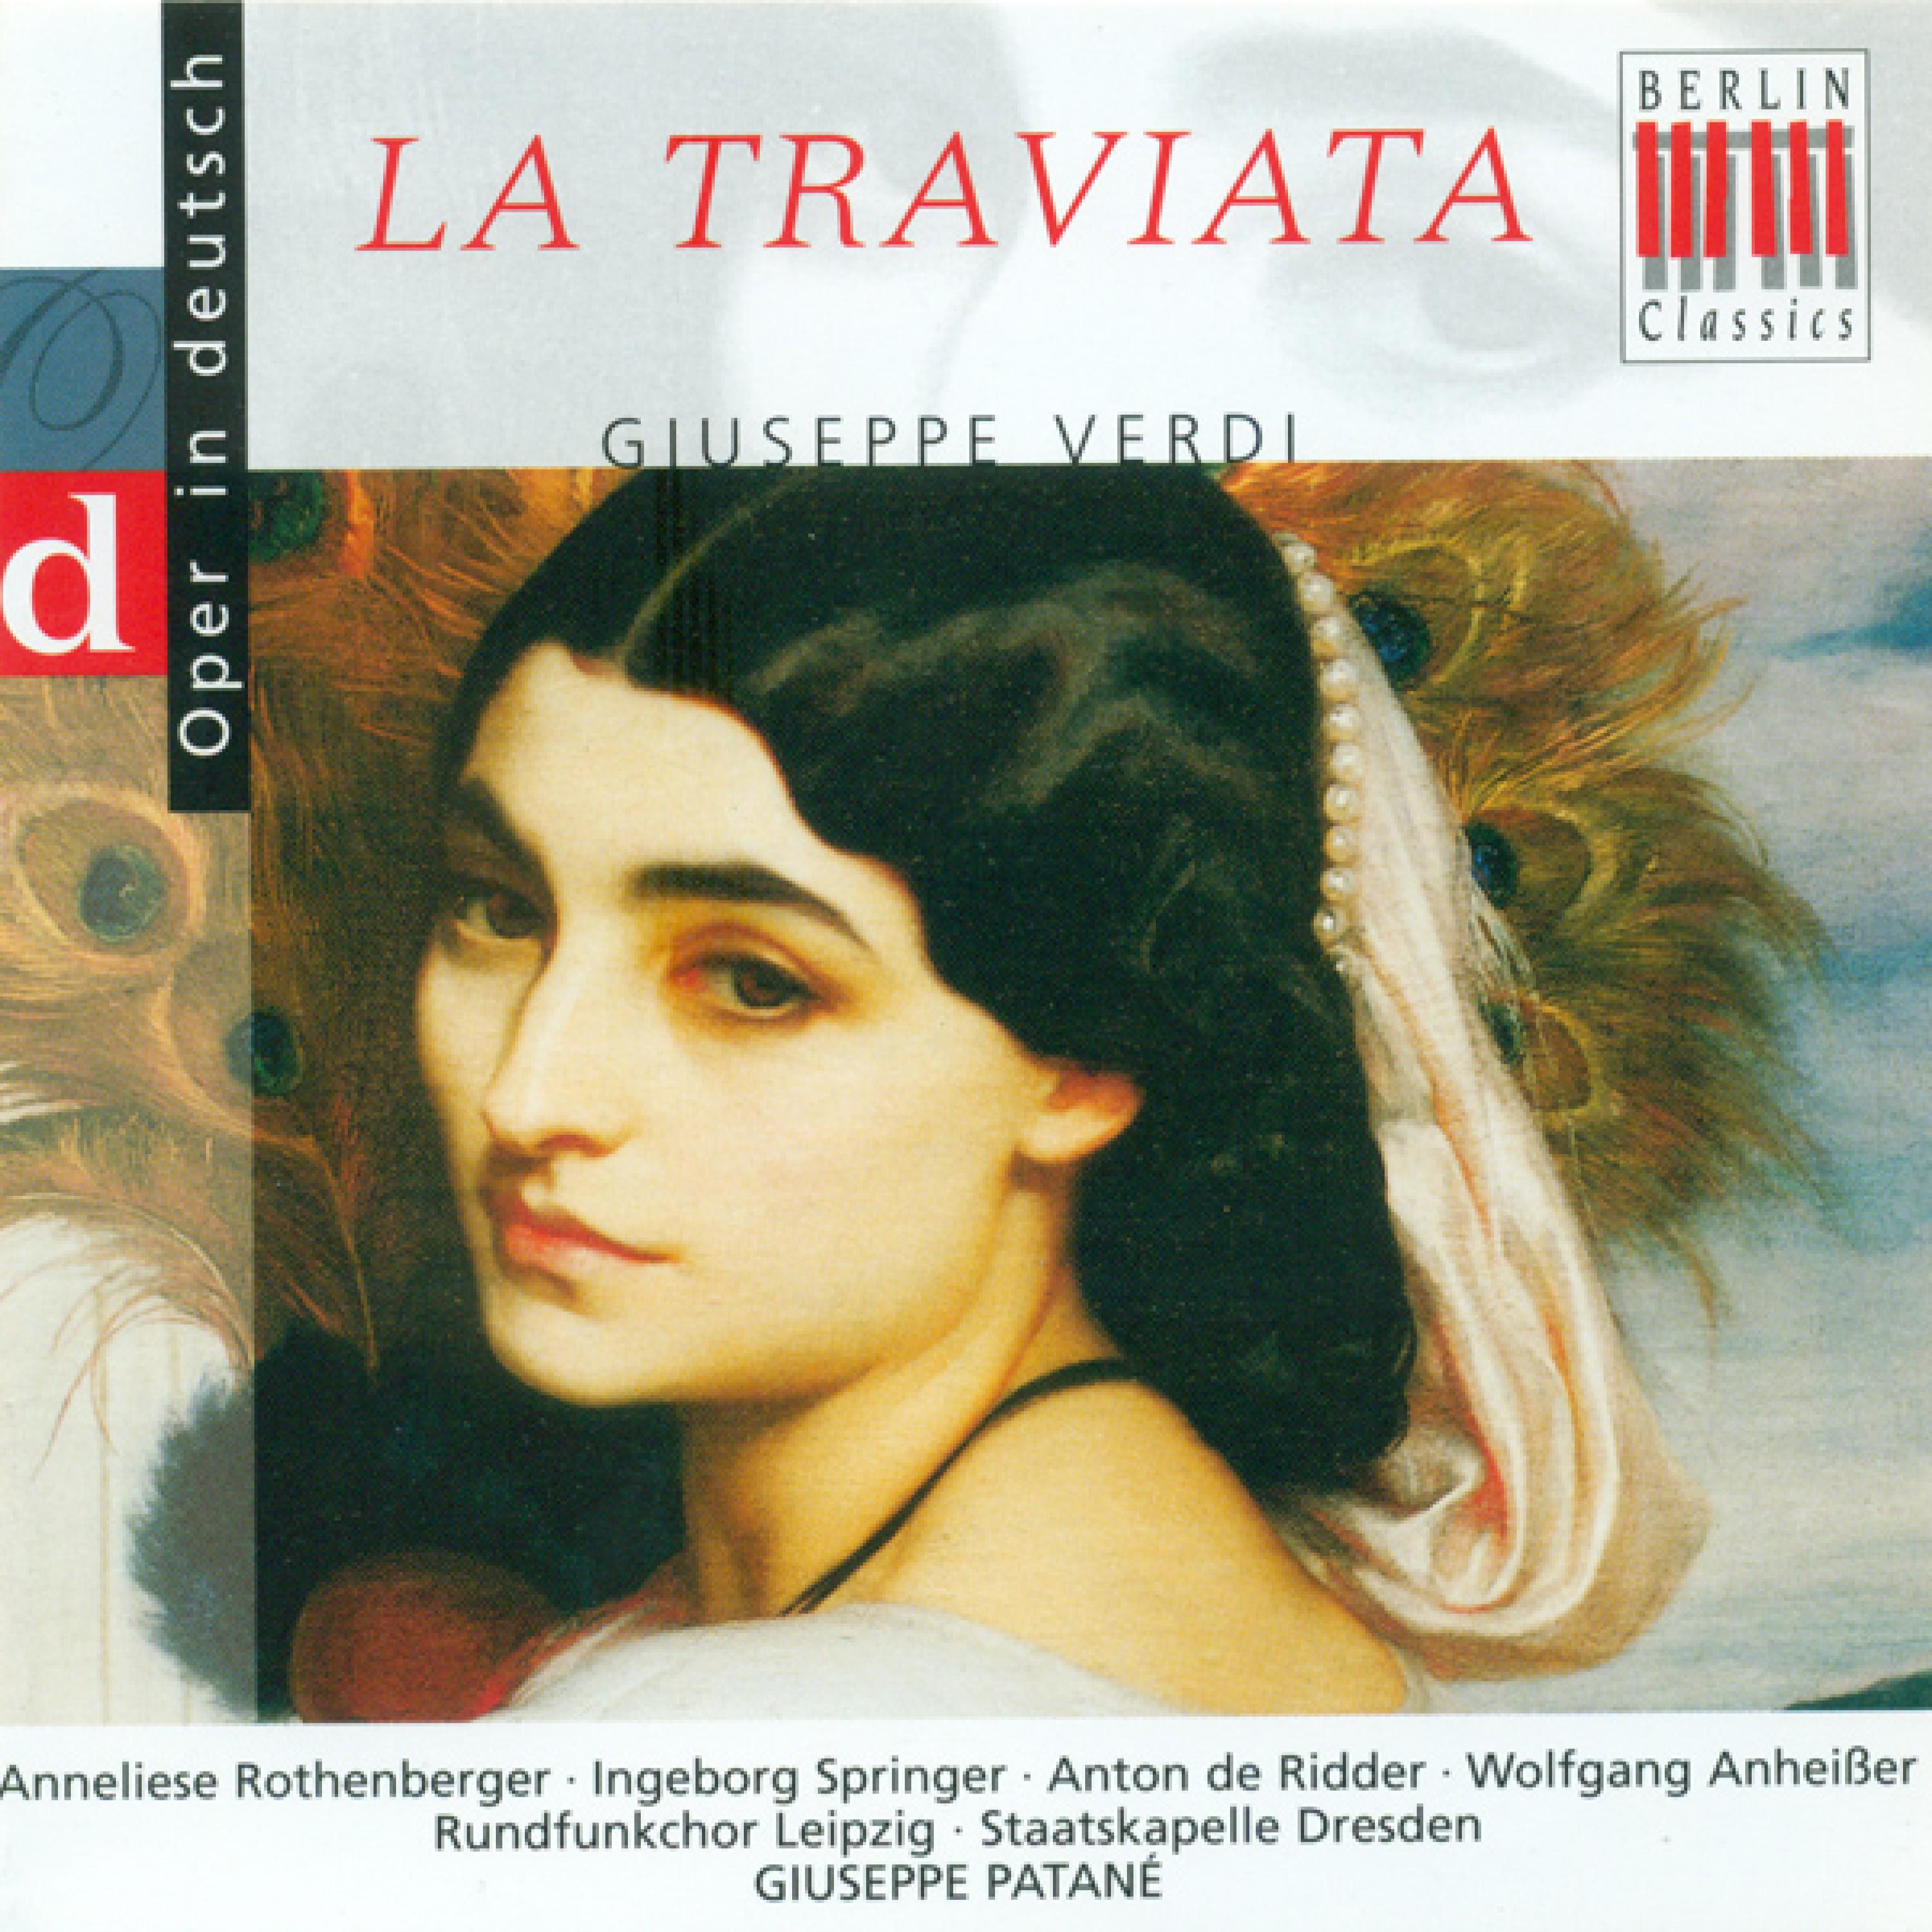 La Traviata, Act I: "Ich war bezaubert von deinem Reiz"